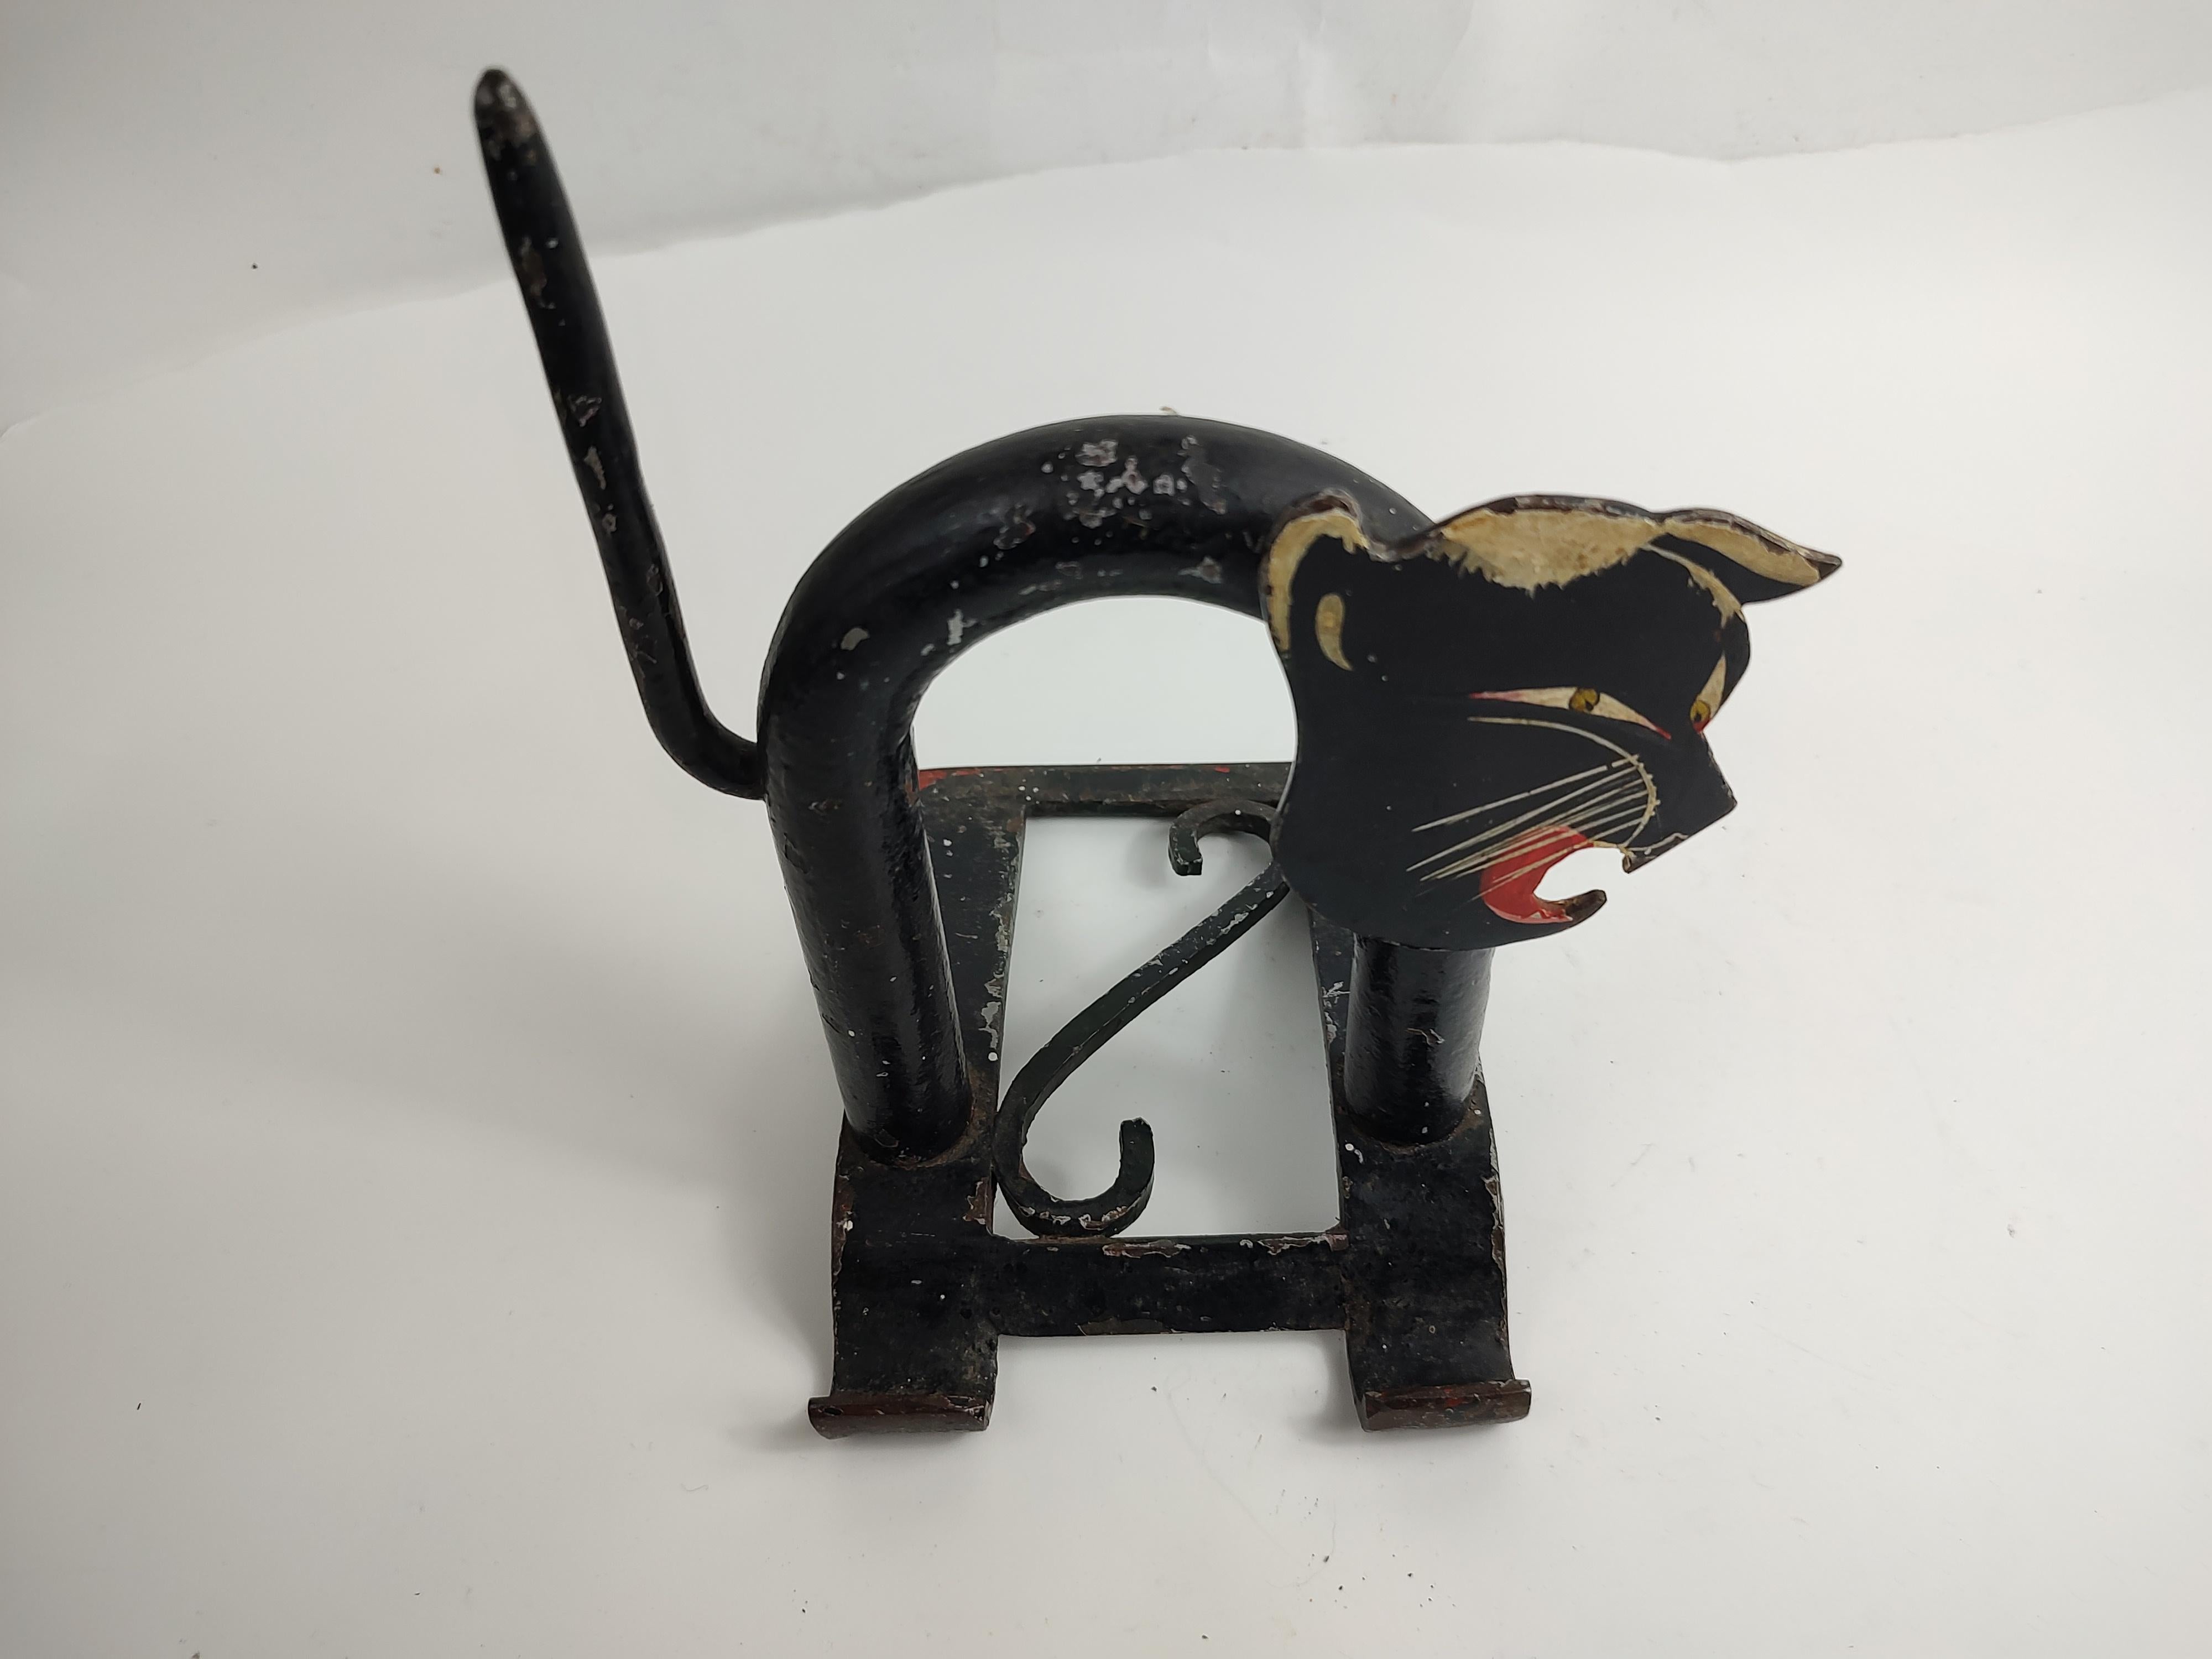 Fabelhafter kreischender schwarzer Katzen-Türstopper aus Eisen und Stahl. Stilisiert nach der Art von Walter Von Neesen für Chase. In ausgezeichnetem Vintage-Zustand mit minimalen Gebrauchsspuren.